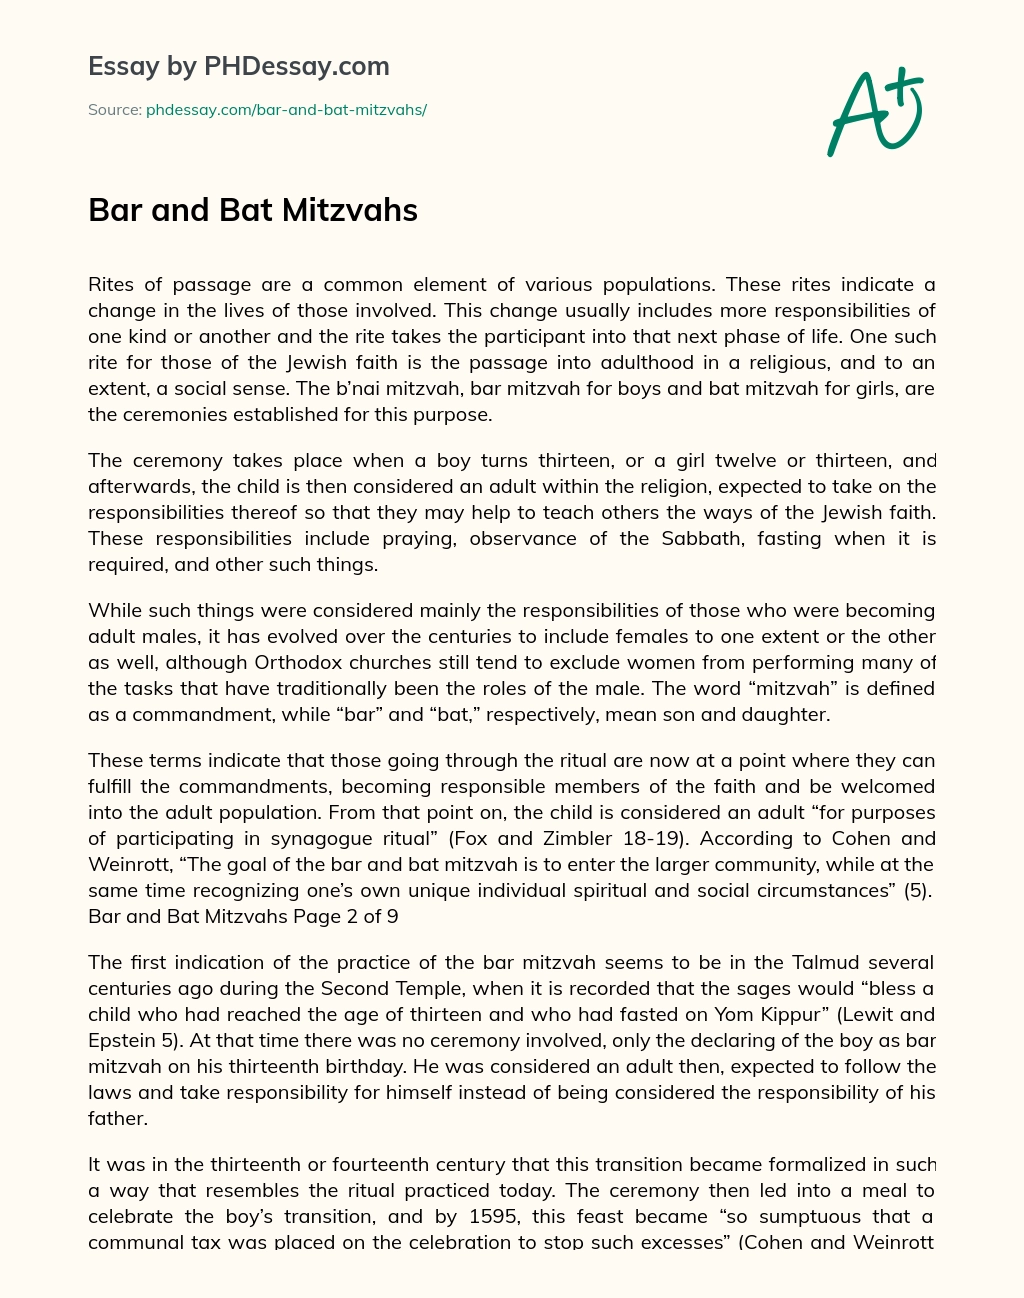 Bar and Bat Mitzvahs essay